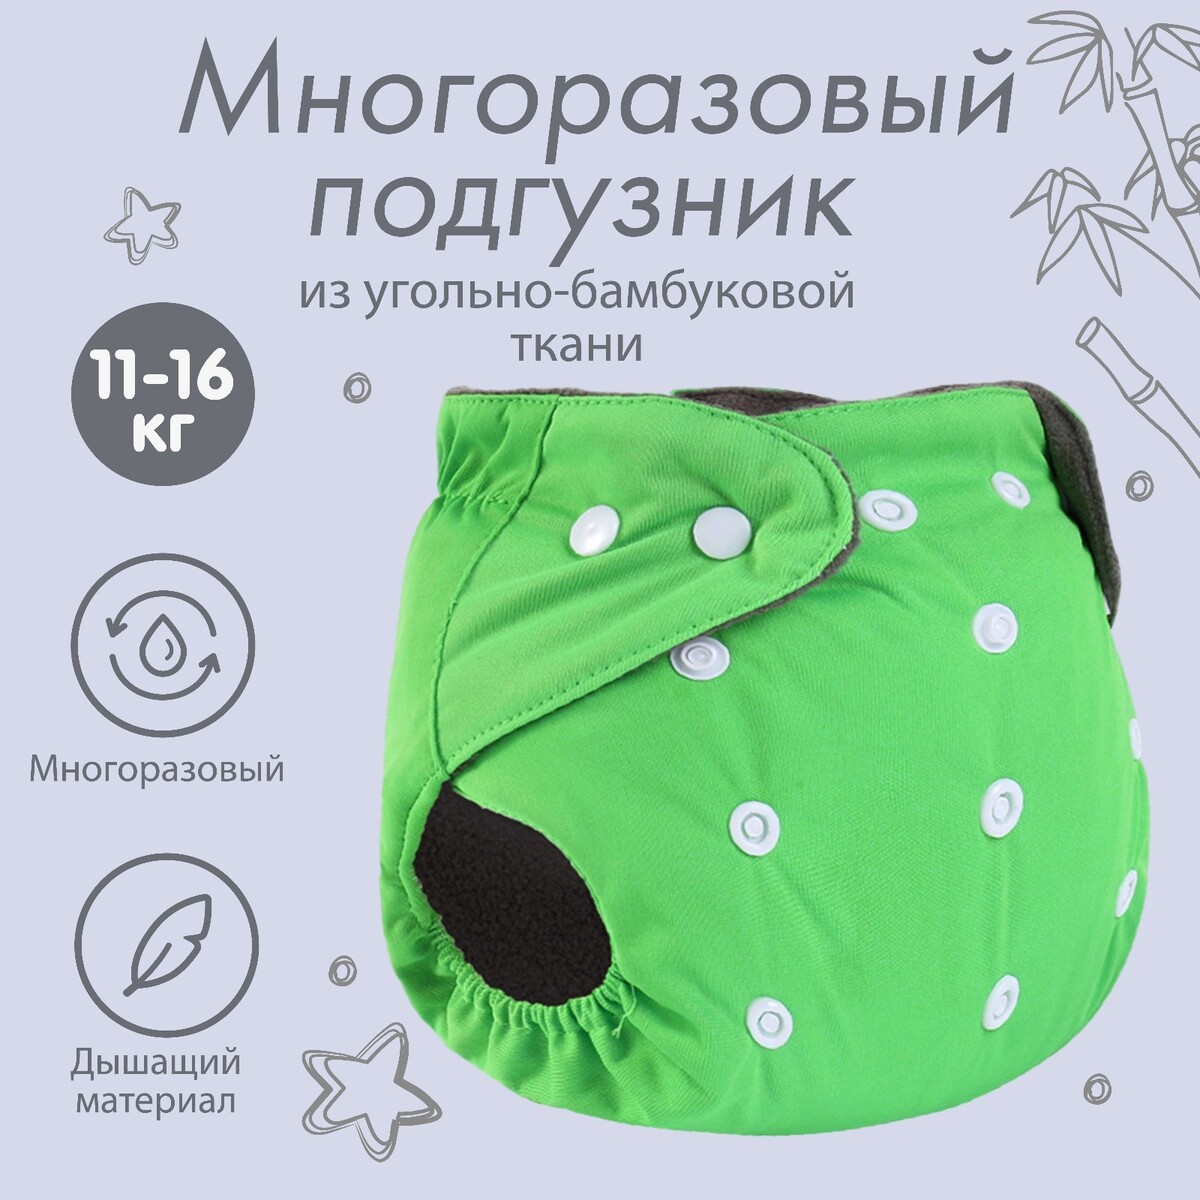 фото Трусики-подгузник, многоразовый, угольно-бамбуковая ткань, цвет зеленый, от 0-36 мес. крошка я